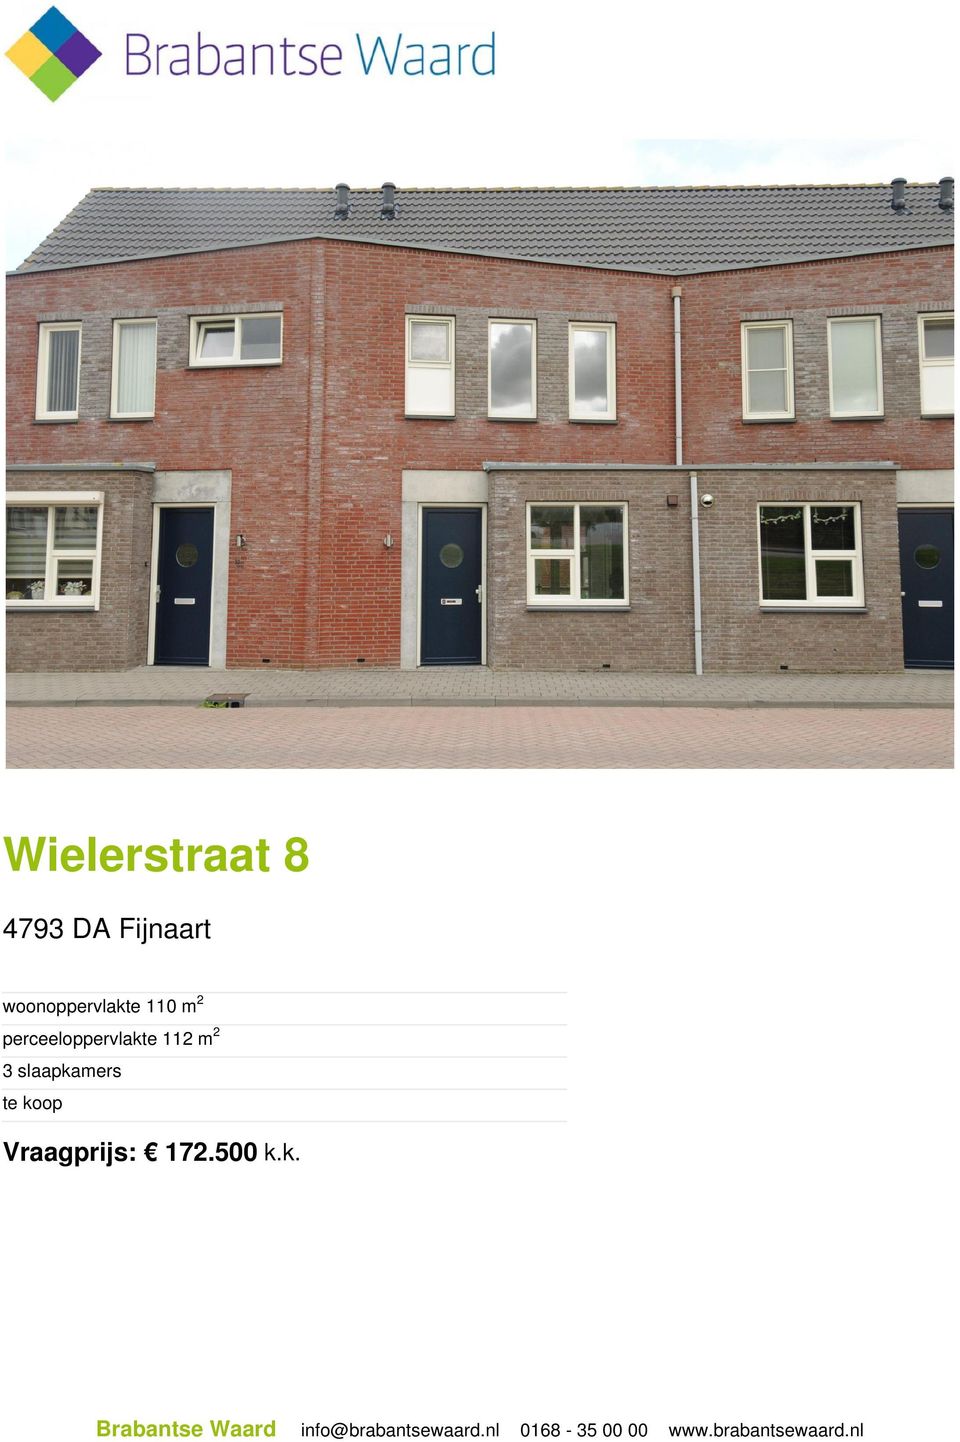 koop Vraagprijs: 172.500 k.k. Brabantse Waard info@brabantsewaard.